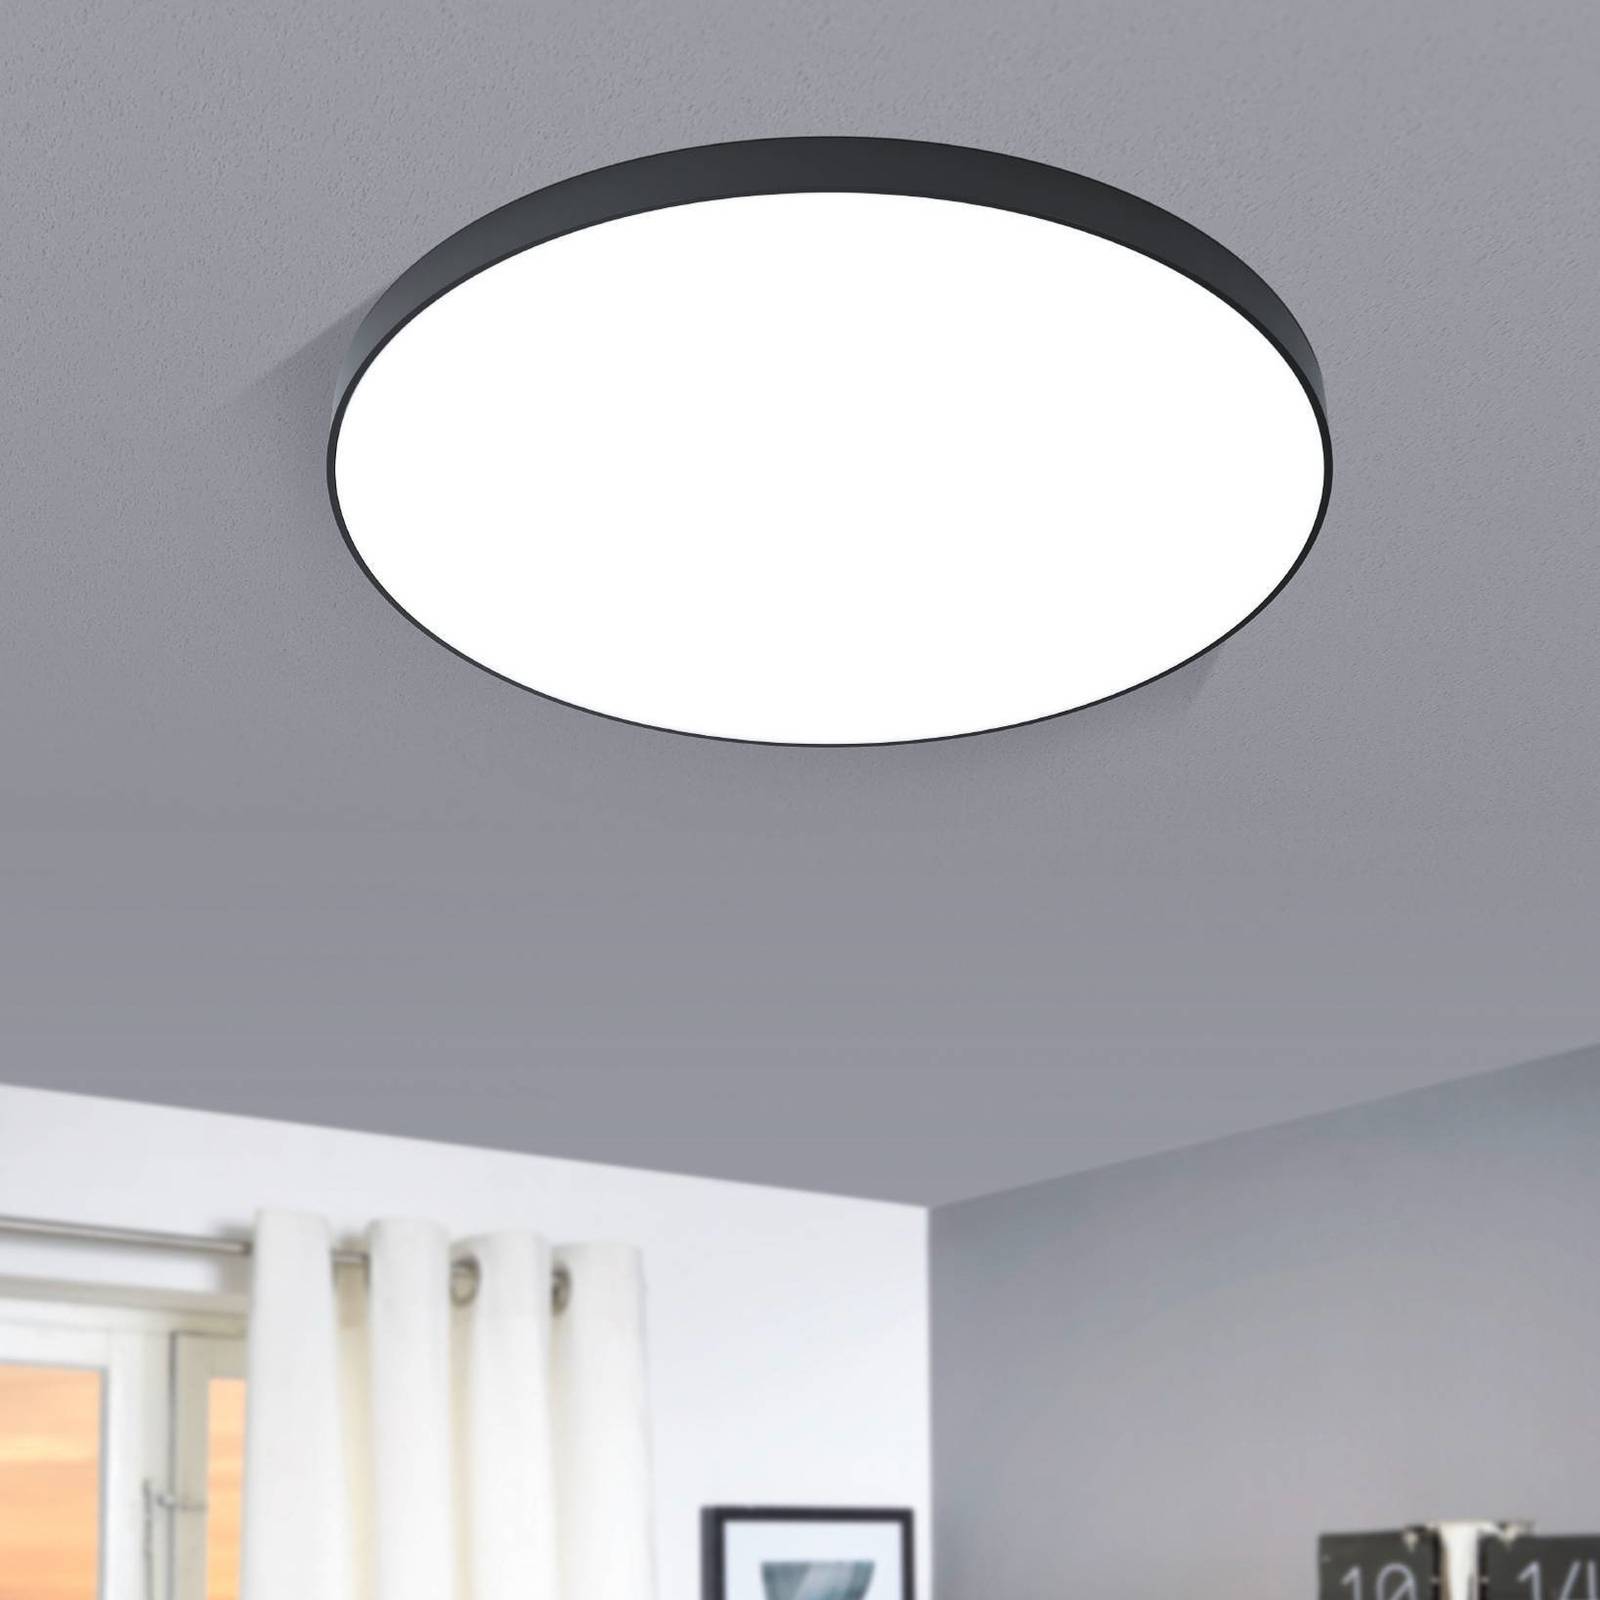 EGLO LED stropní svítidlo Zubieta-A, černé, Ø60cm